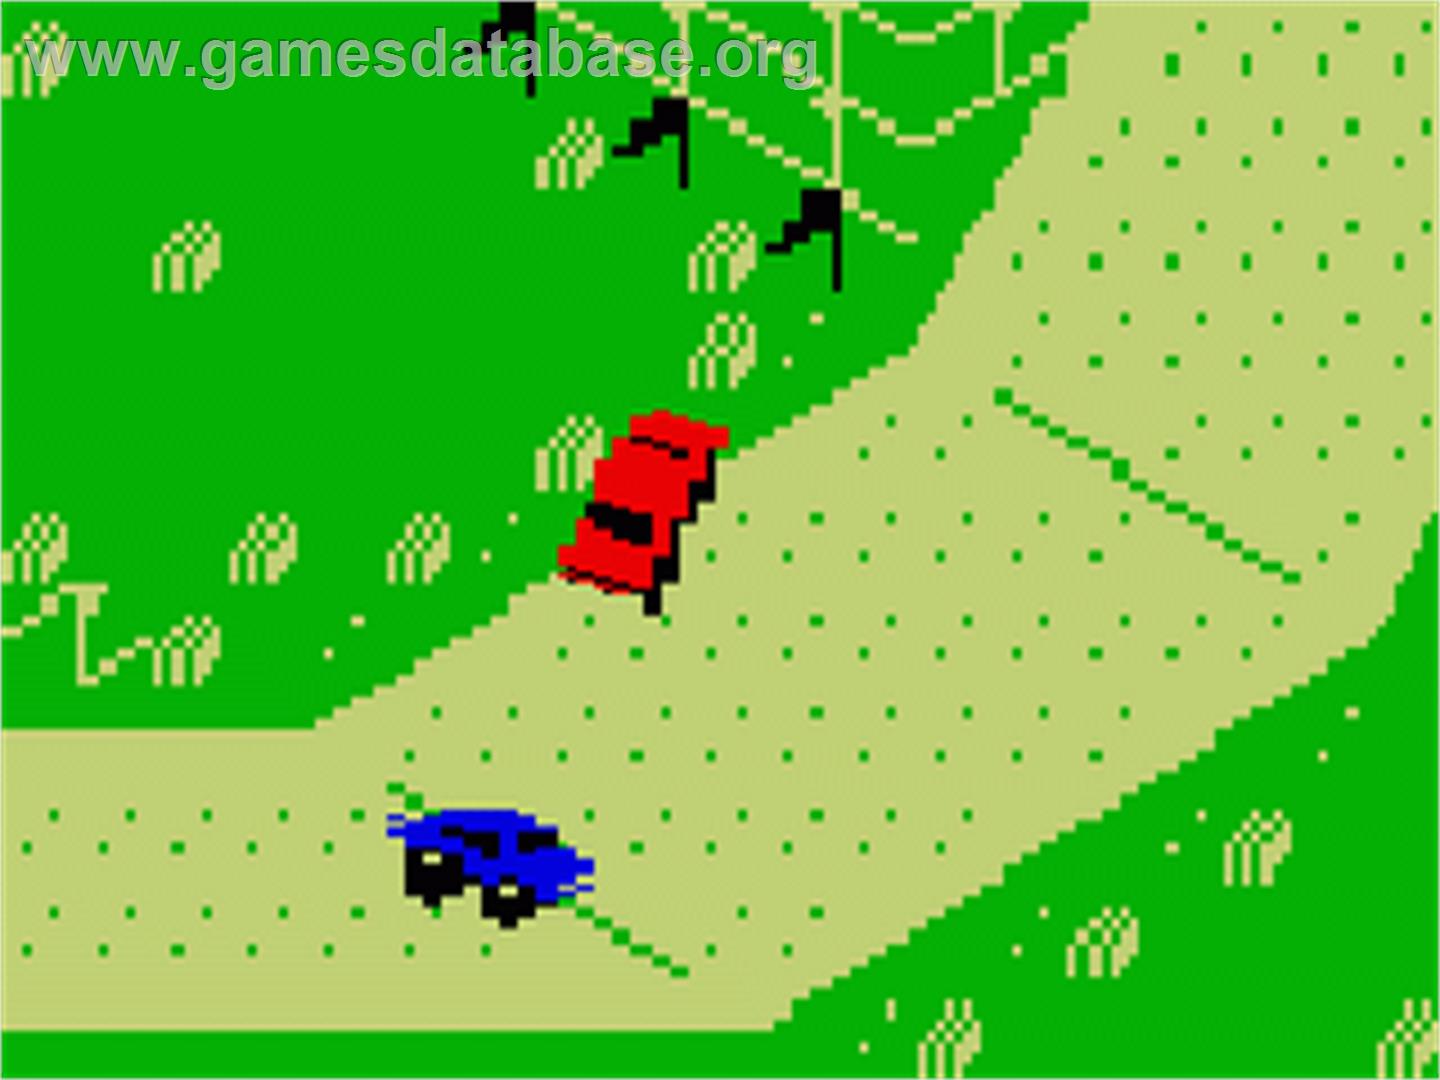 Stadium Mud Buggies - Mattel Intellivision - Artwork - In Game